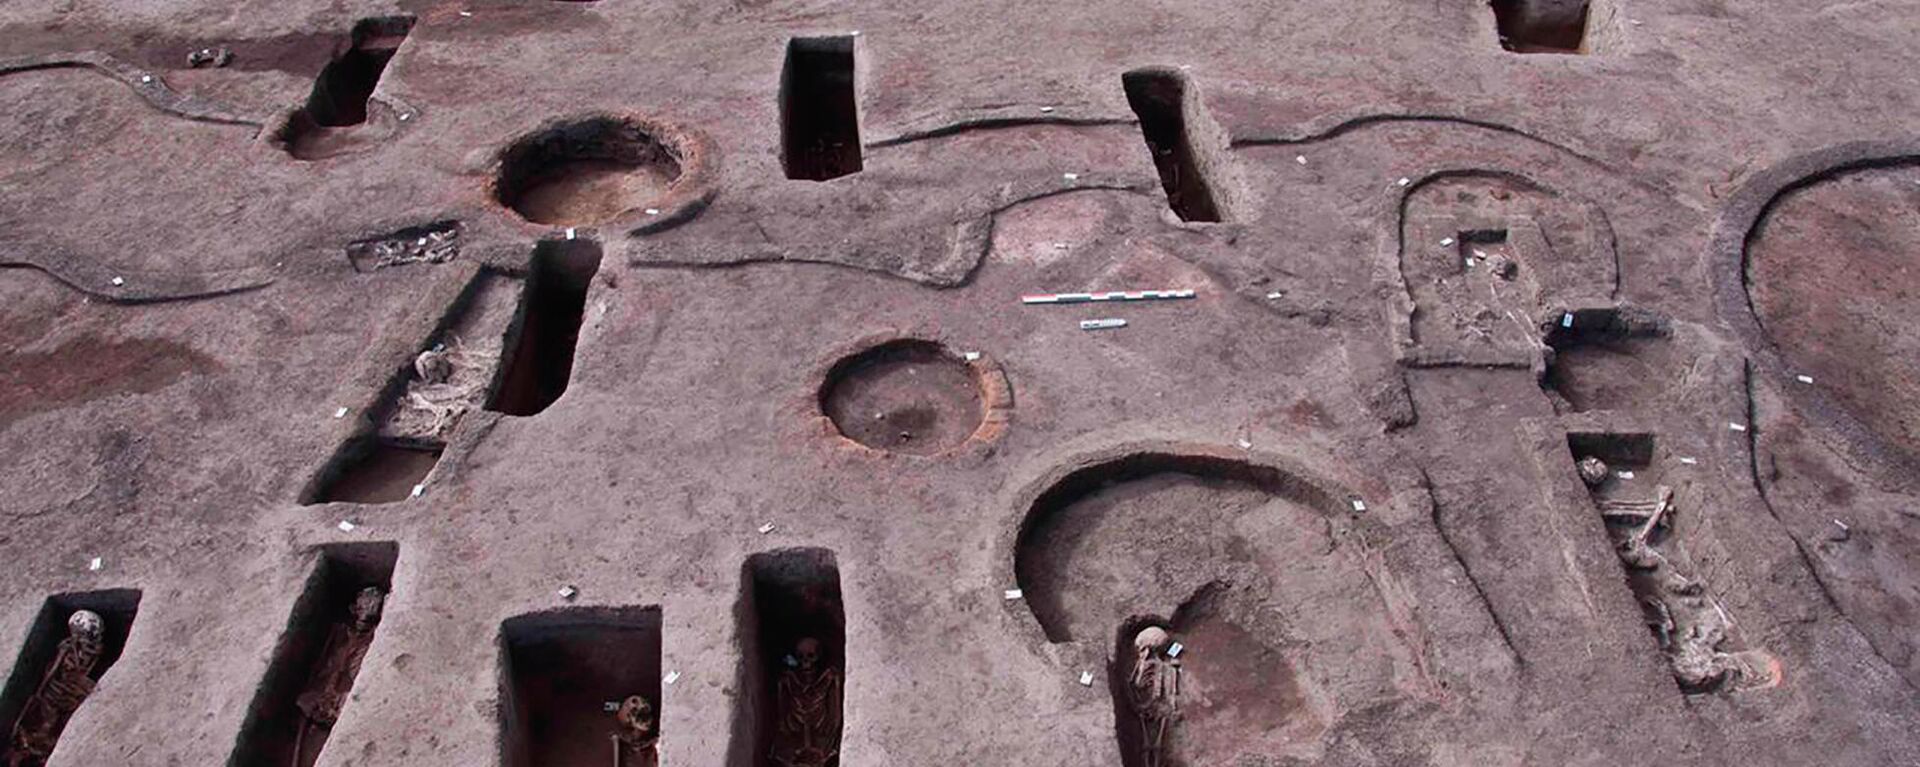 Tumbas en el sitio arqueológico de Koum el-Khulgan en el Delta del Nilo - Sputnik Mundo, 1920, 29.04.2021